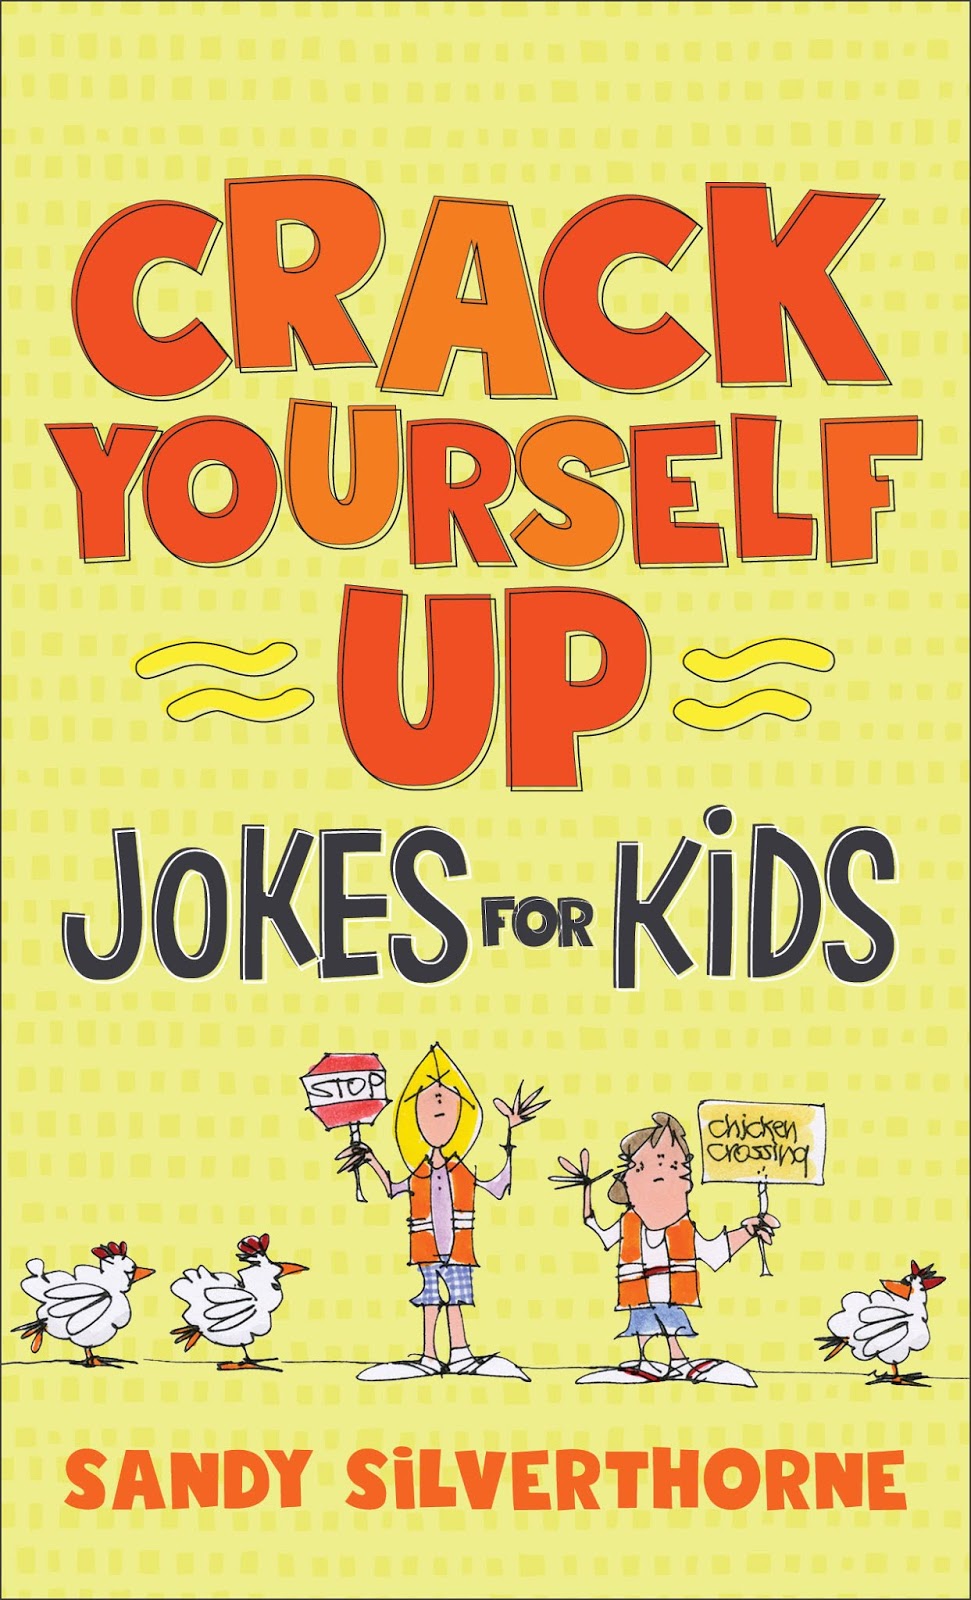 Giggles: a joke book. Joking up